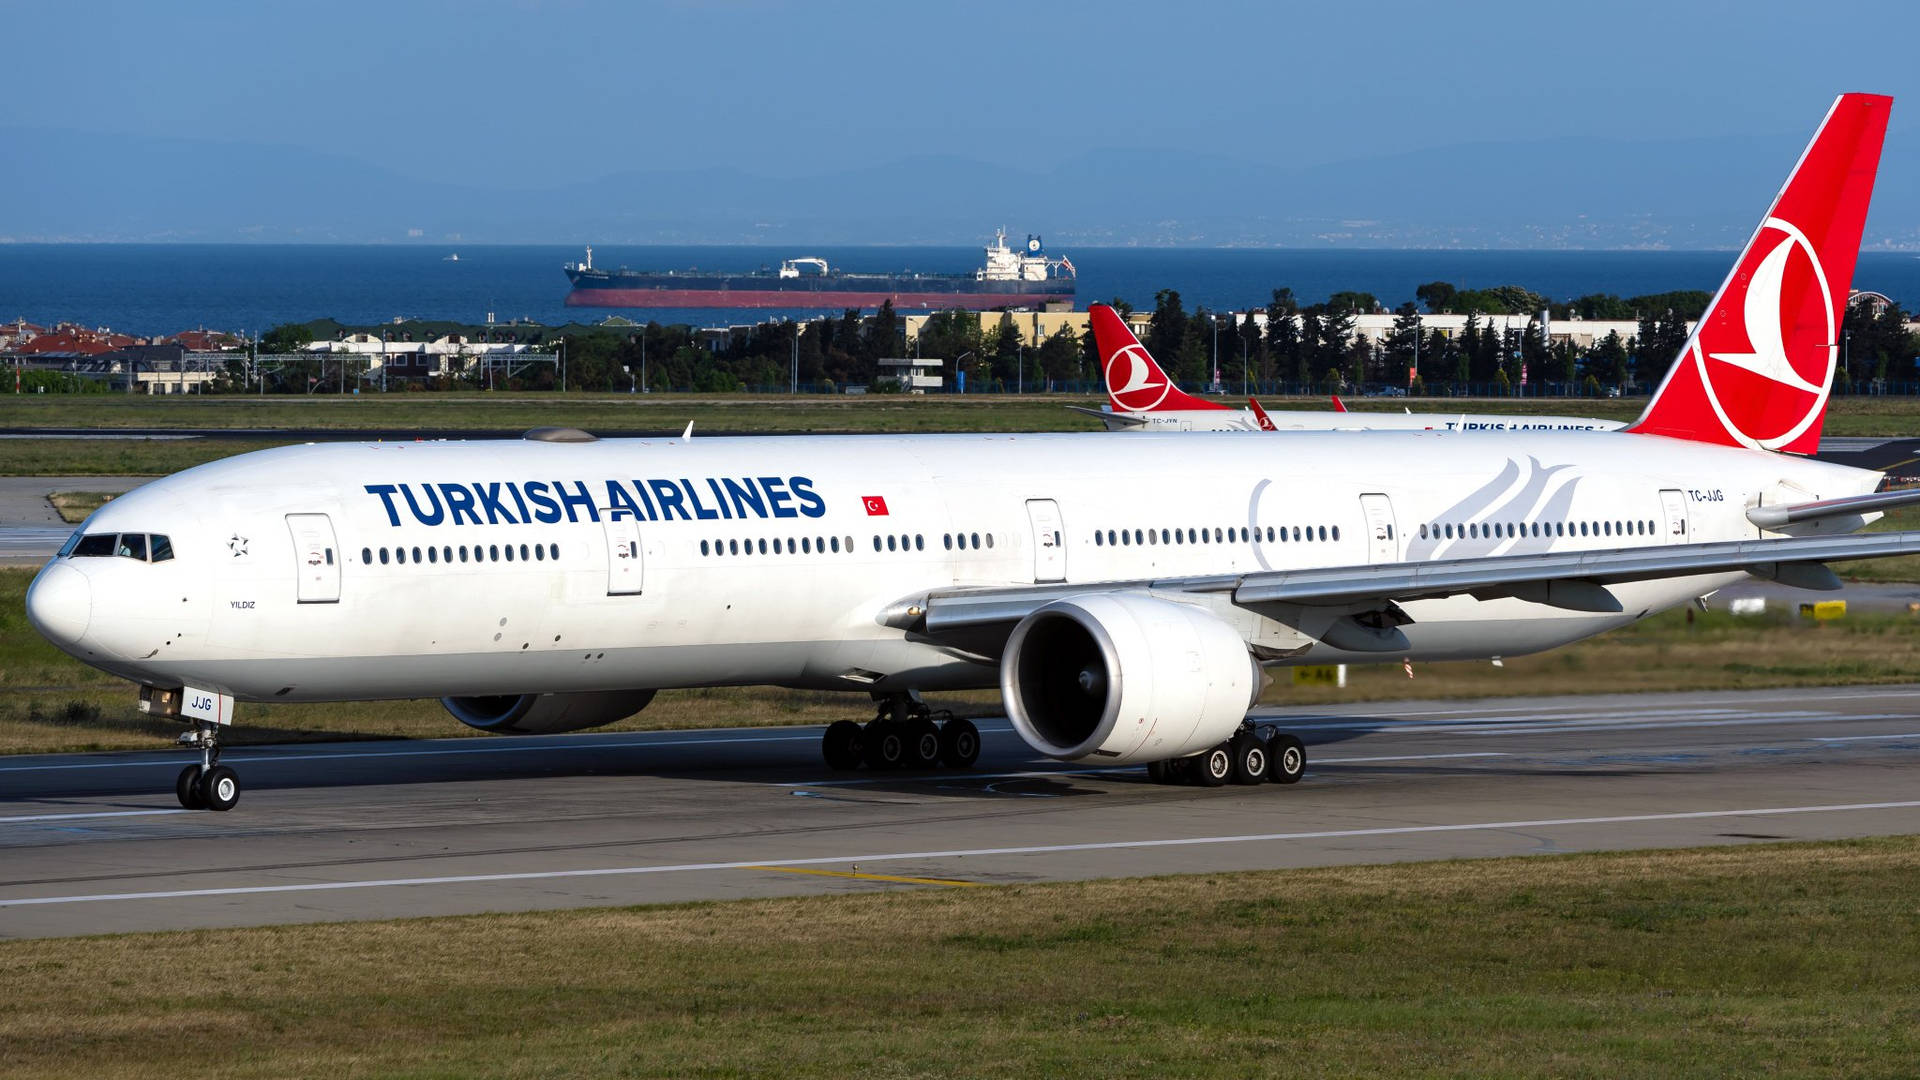 Turkiskaairlines Flygplan På Istanbul Flygplats. Wallpaper